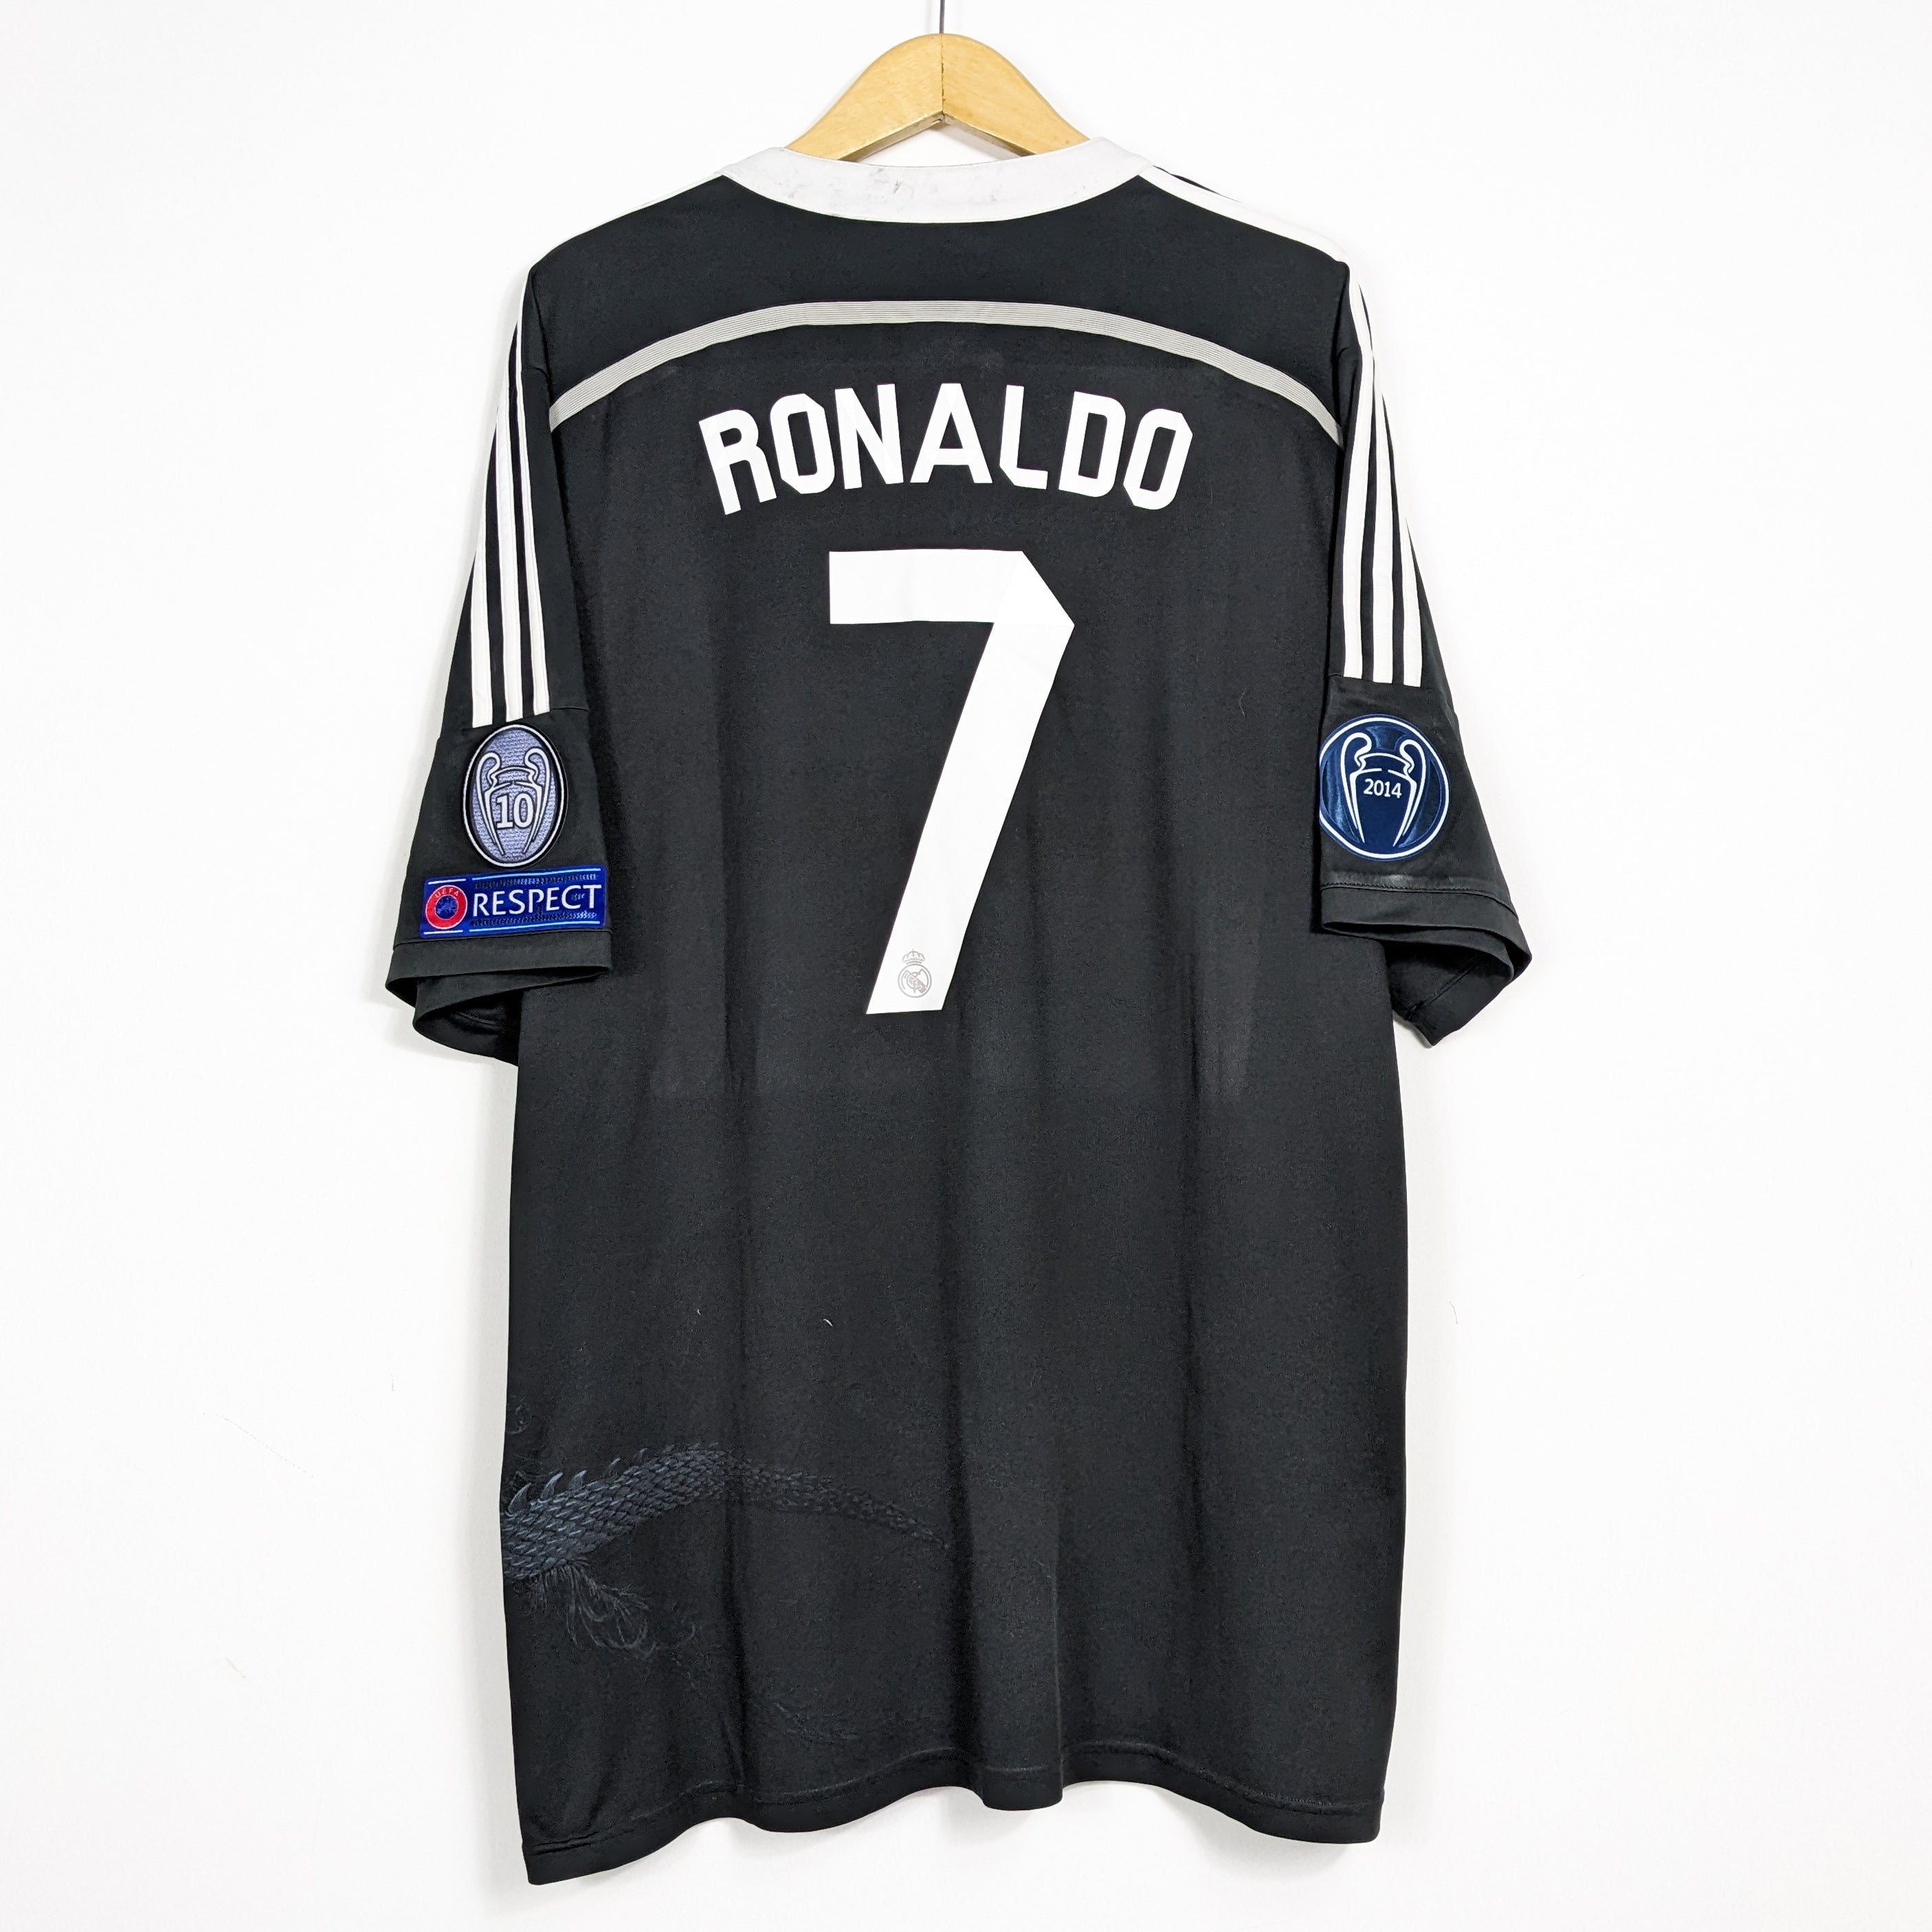 Authentic Real Madrid Yohji Yamamoto 2014/2015 Third - Ronaldo #7